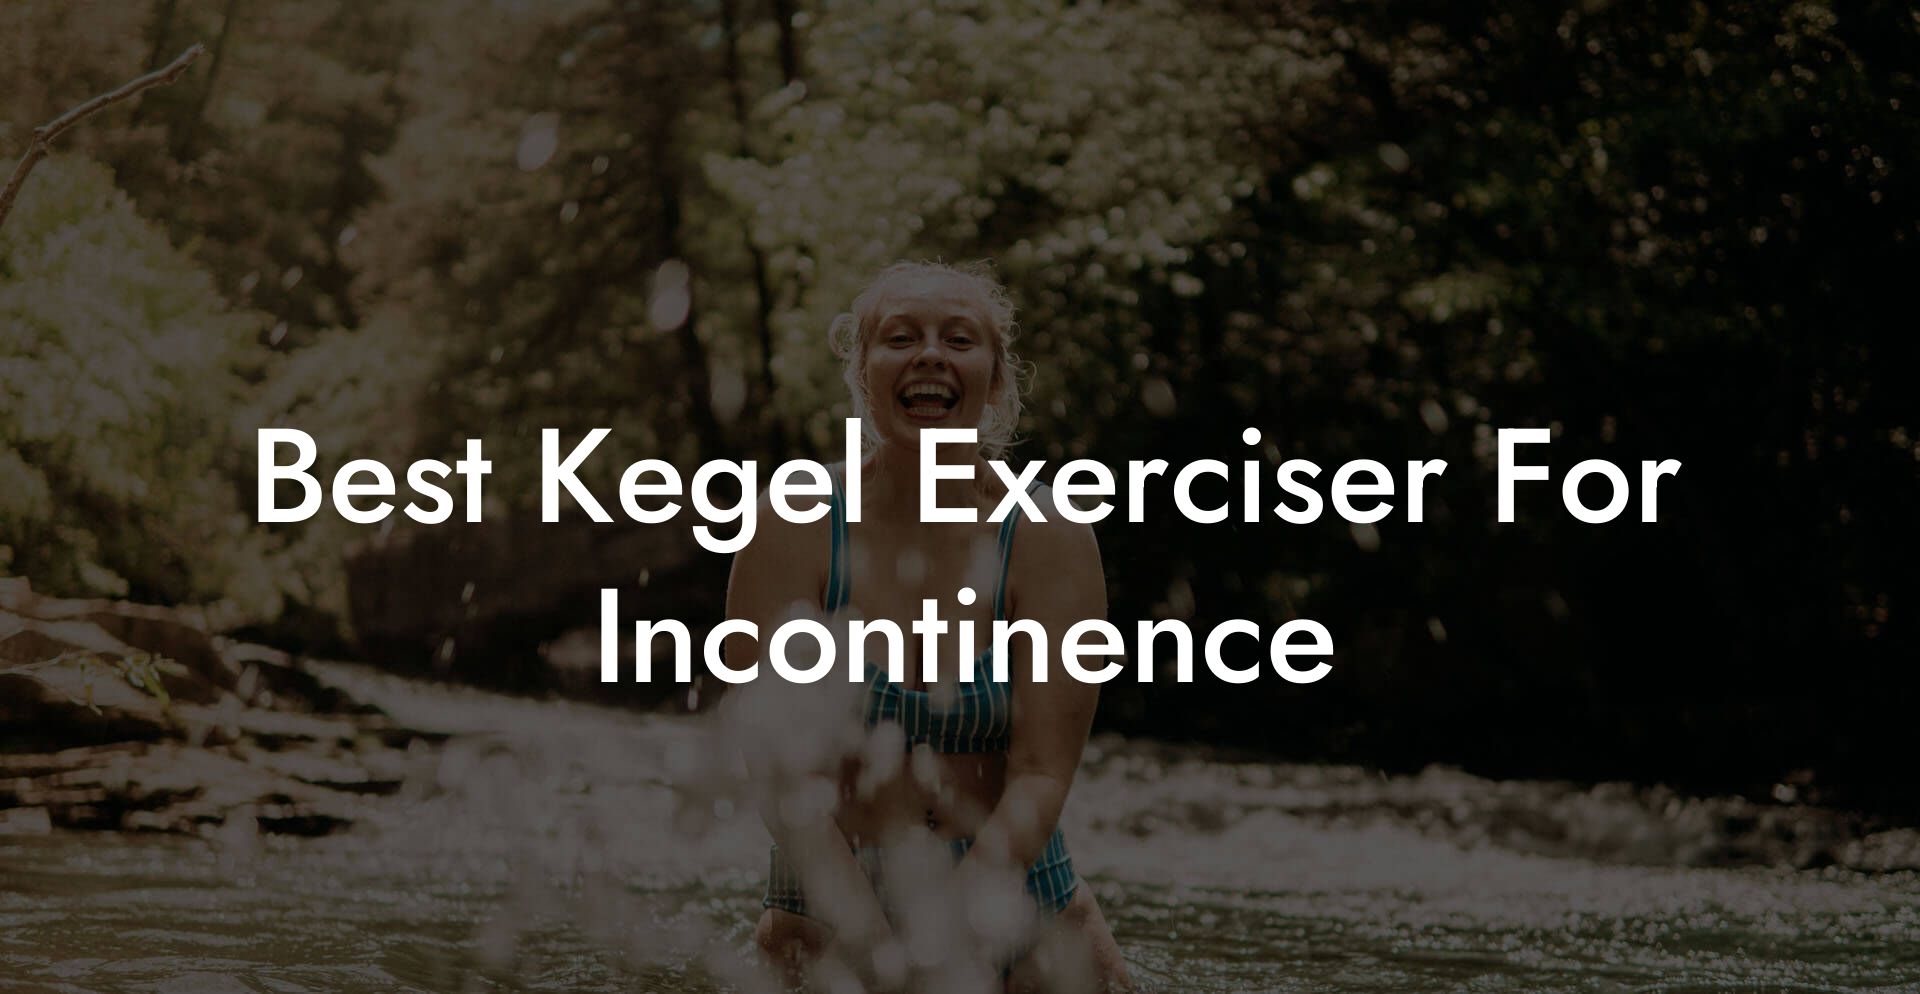 Best Kegel Exerciser For Incontinence